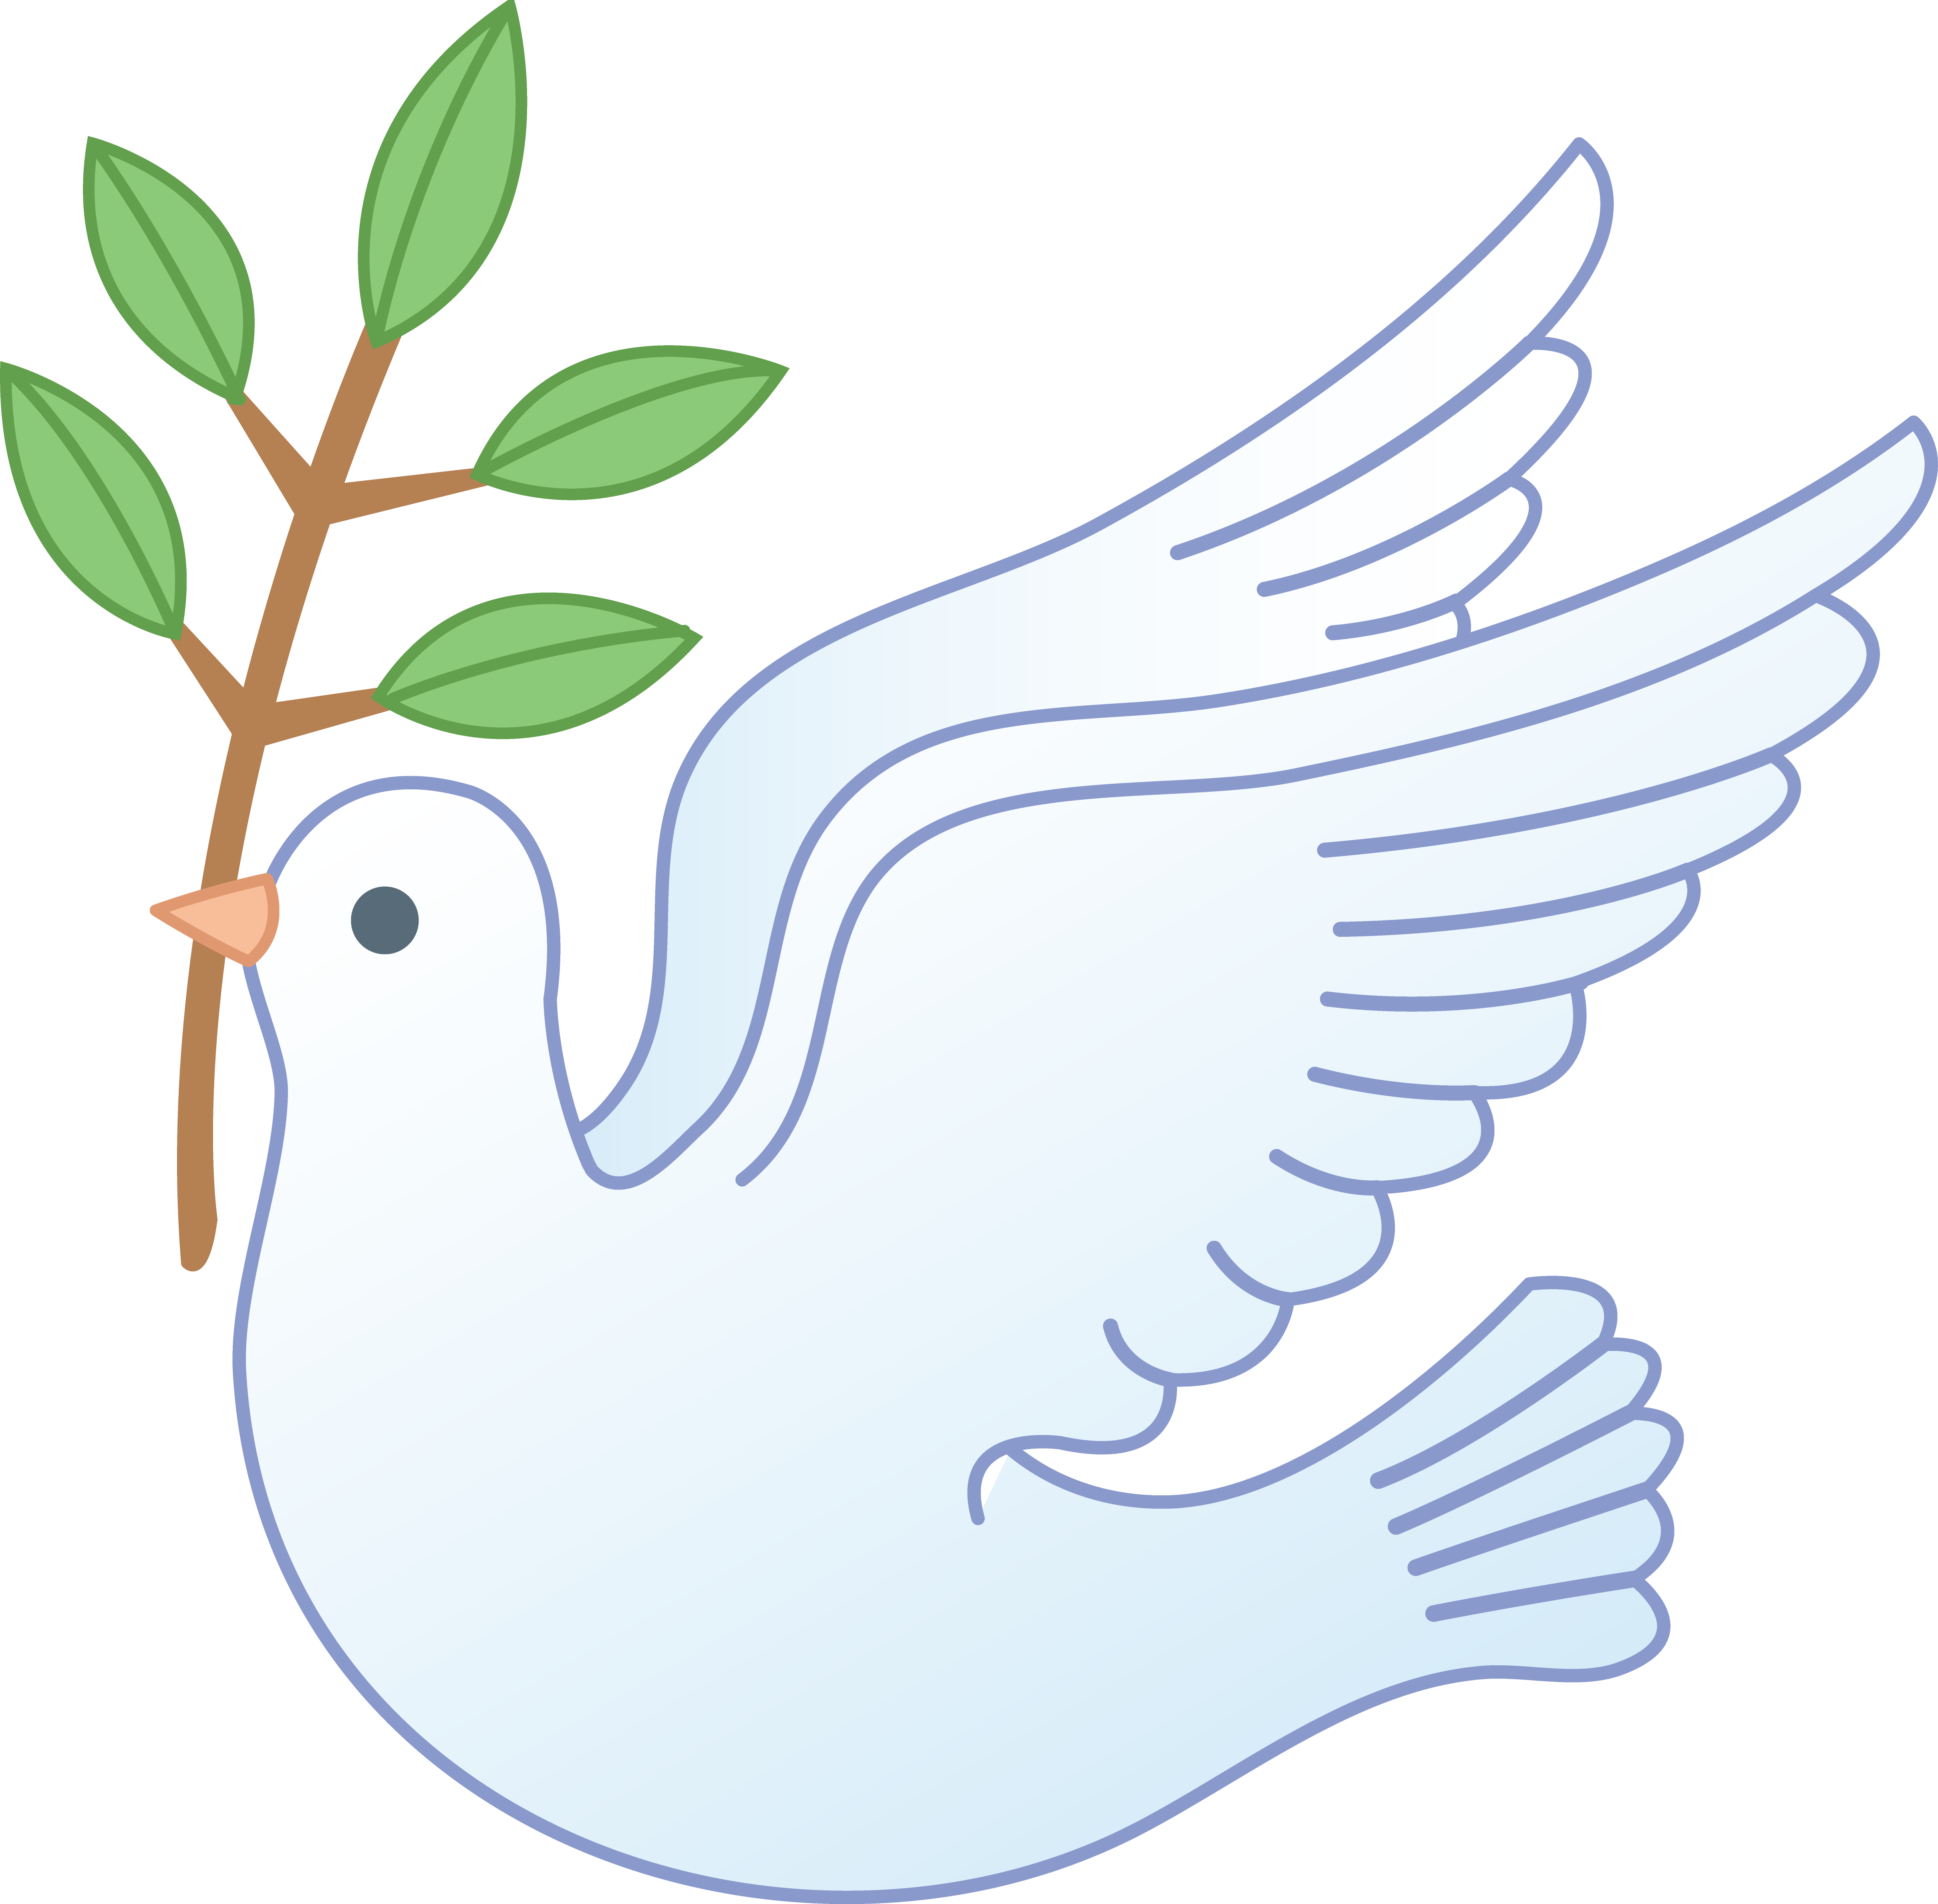 Clip Art Peace Dove - Cliparts.co